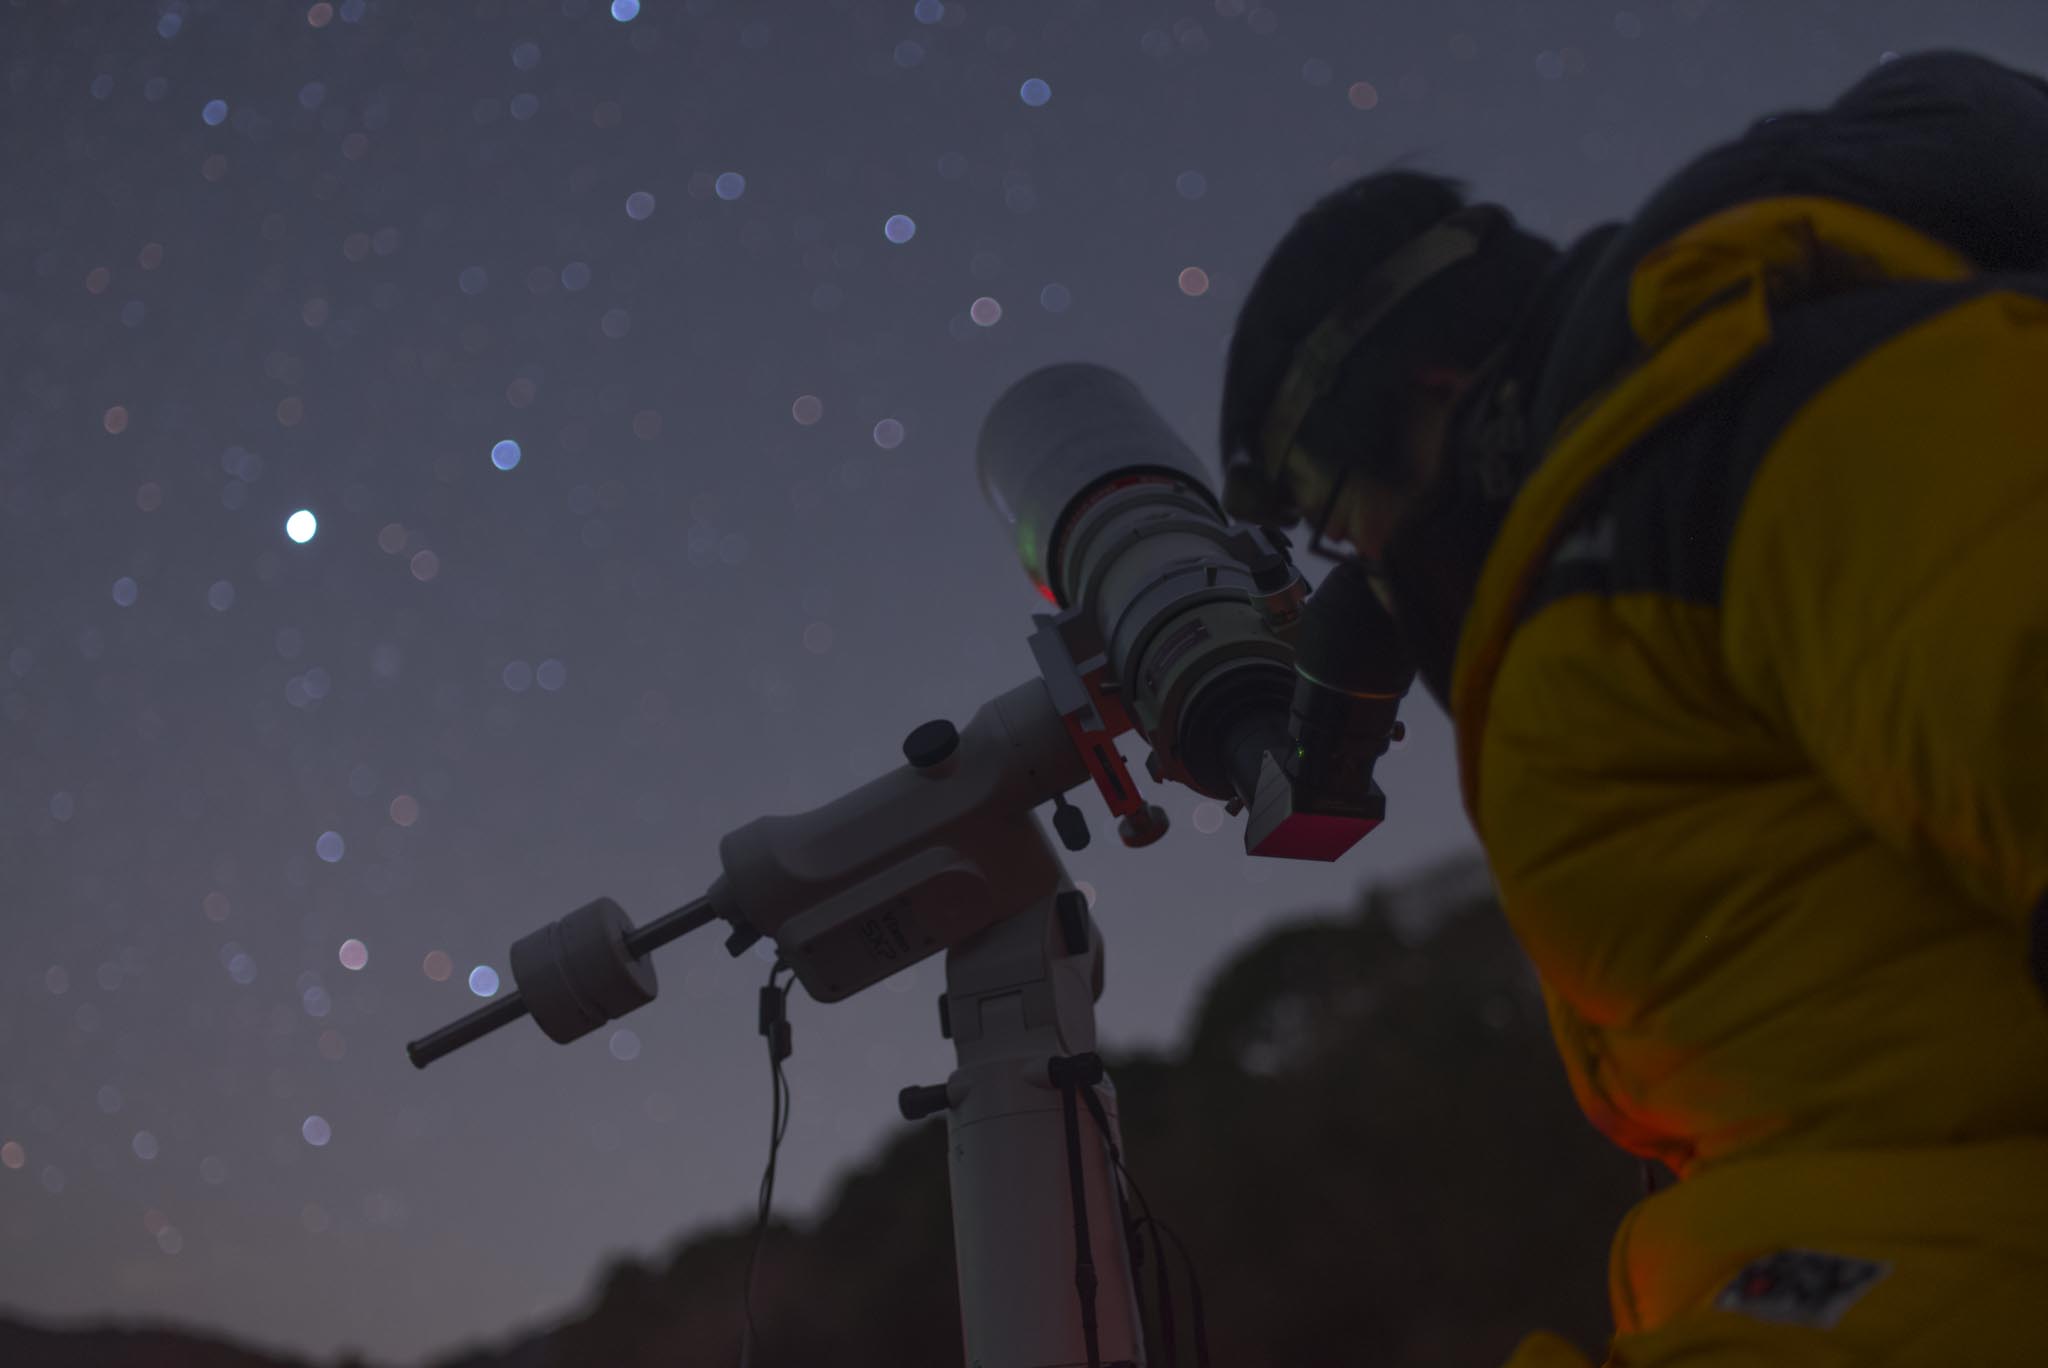 ブランド激安セール会場 ショップりす山PENTAX smc PENTAX XW30-R 天体望遠鏡用アイピース 見掛け視界70° アイレリーフ20? 日本製  高品位なランタン系高